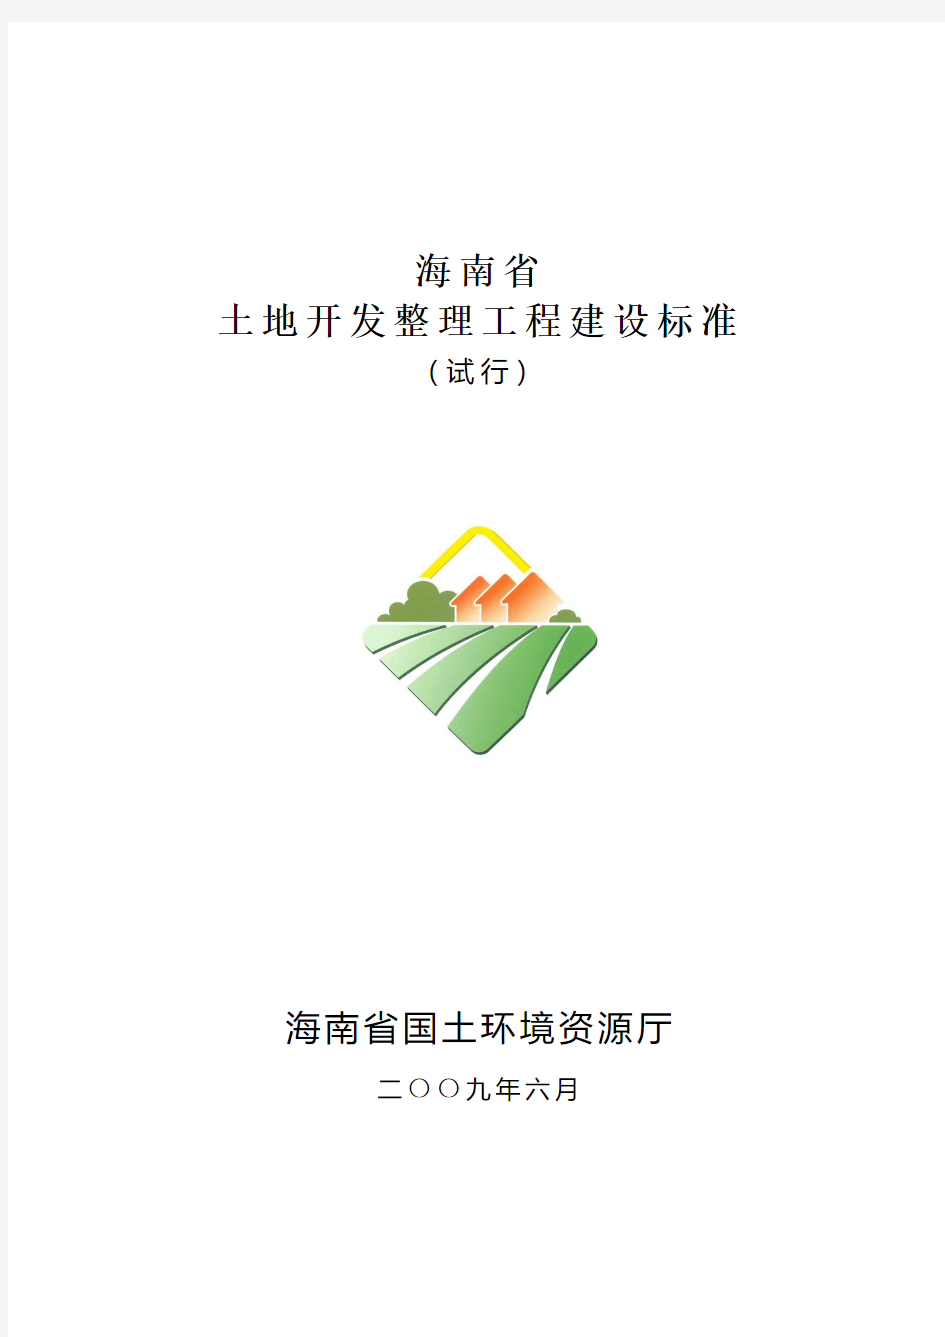 海南省土地开发整理工程建设标准(试行)